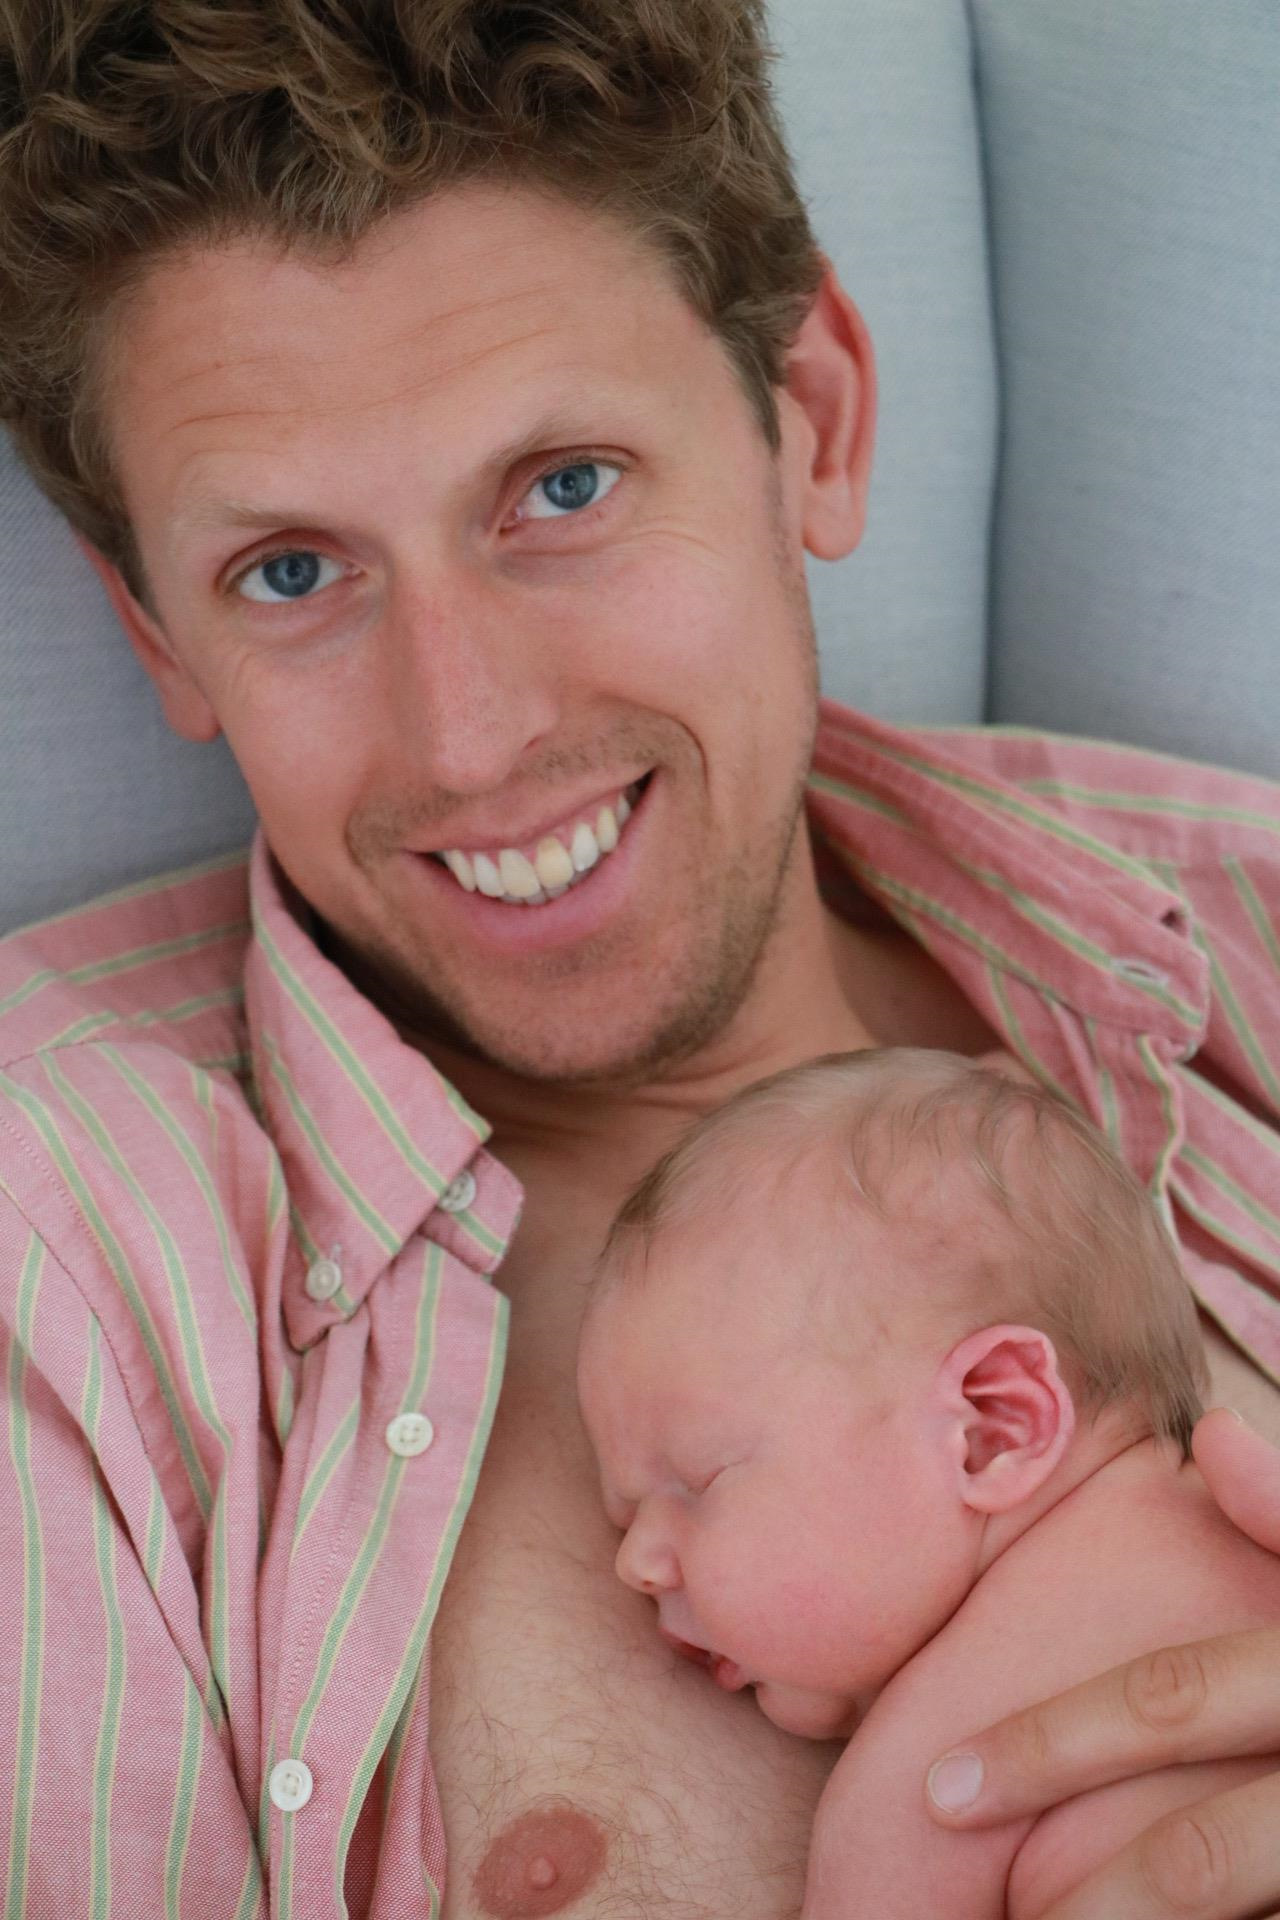 En man tittar leendes in i kameran, ett nyfött barn sover i hans famn